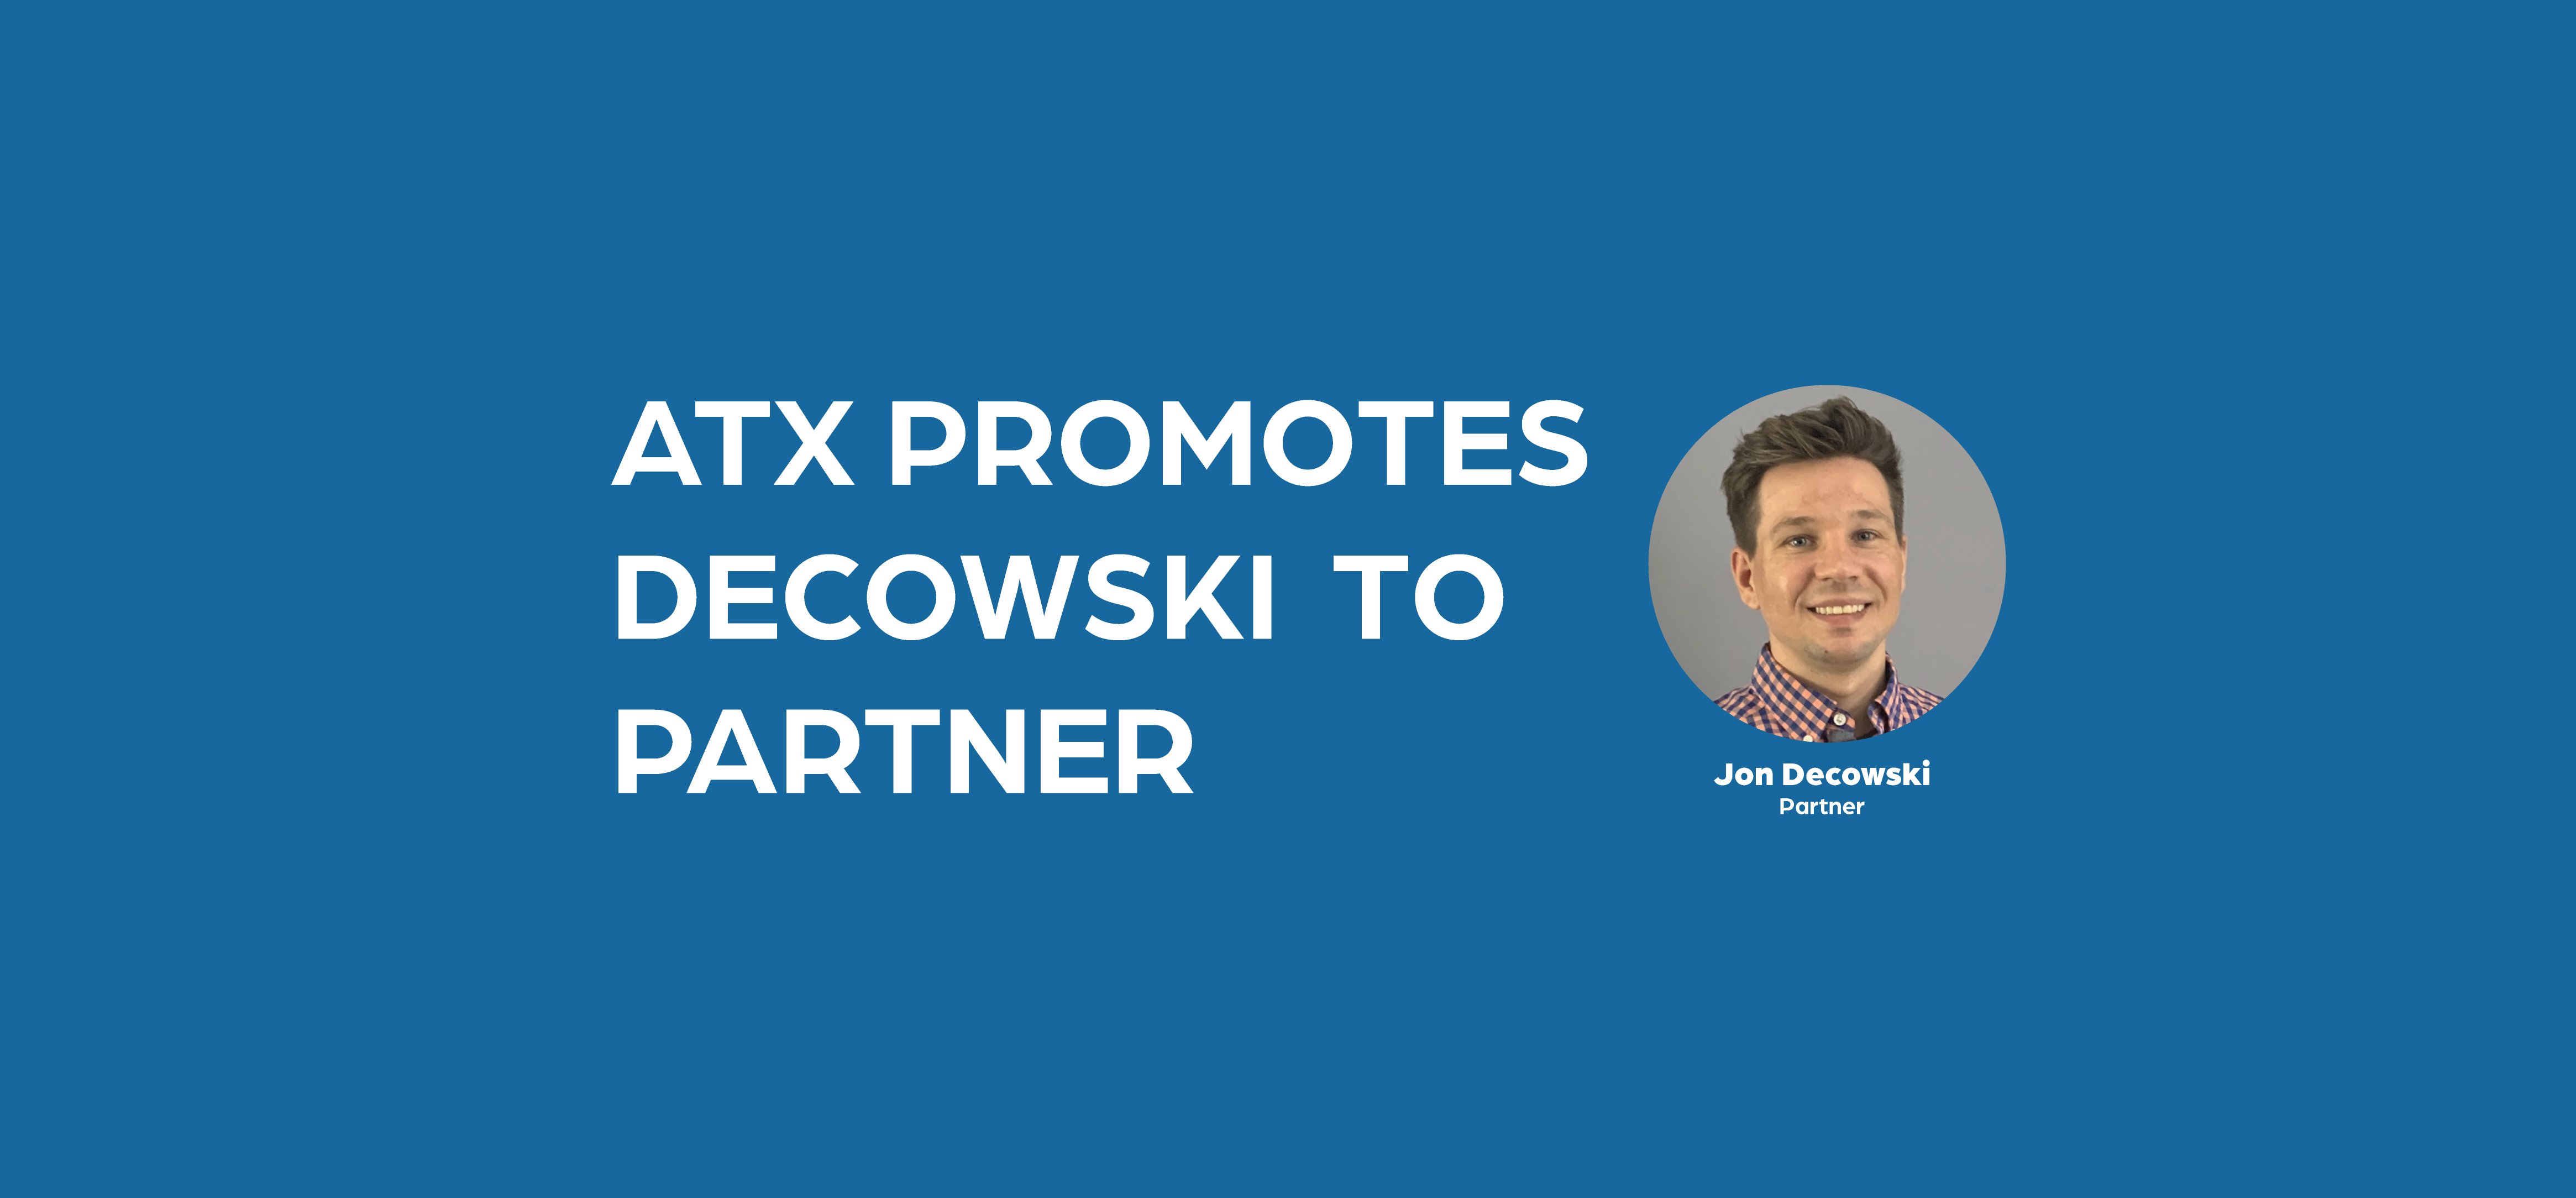 ATX Promotes Decowski to Partner